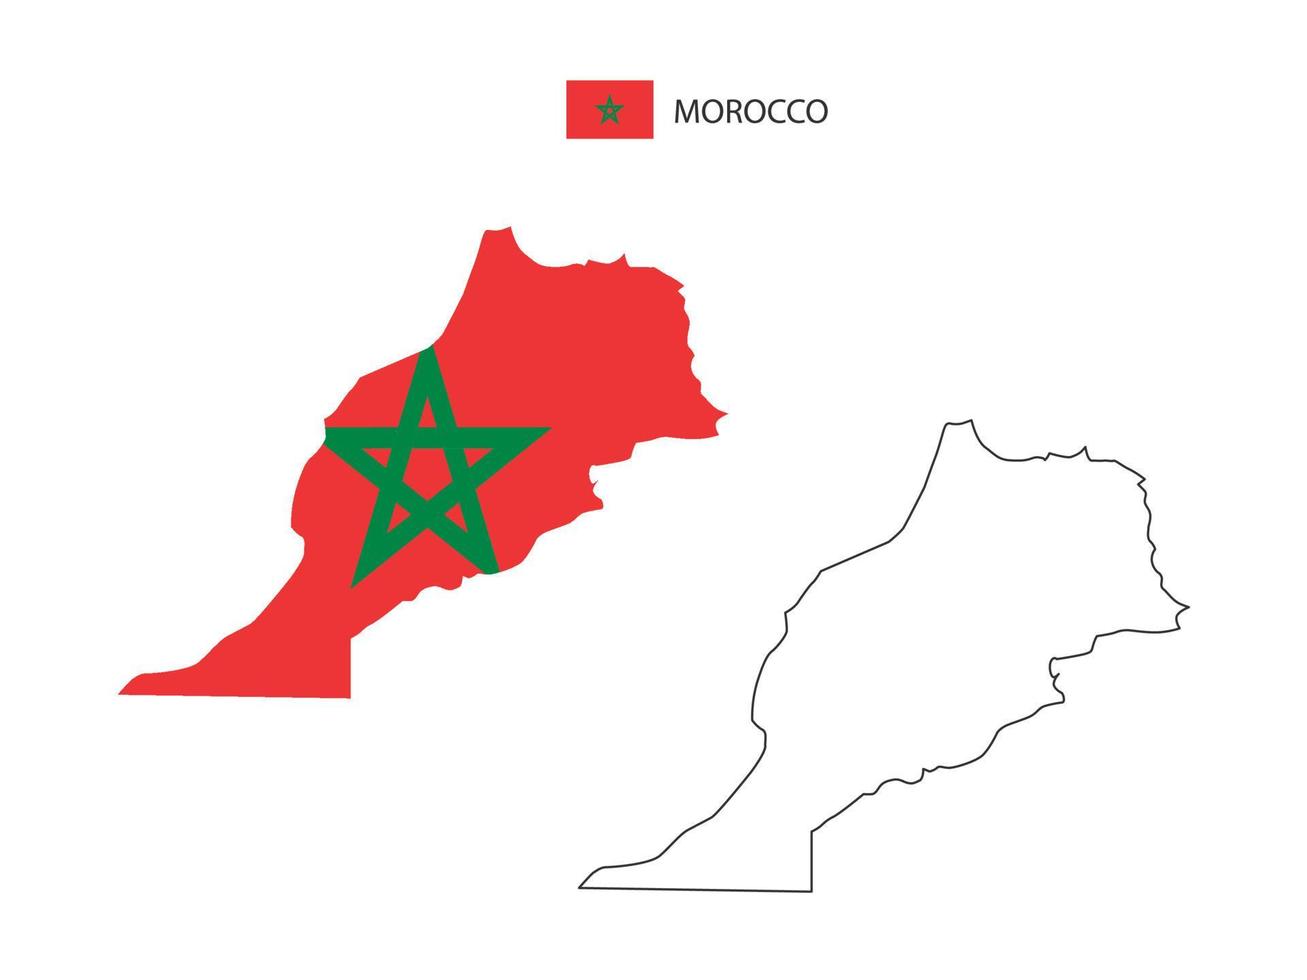 vector de ciudad de mapa de marruecos dividido por estilo de simplicidad de contorno. tiene 2 versiones, versión de línea delgada negra y versión de color de bandera de país. ambos mapas estaban en el fondo blanco.